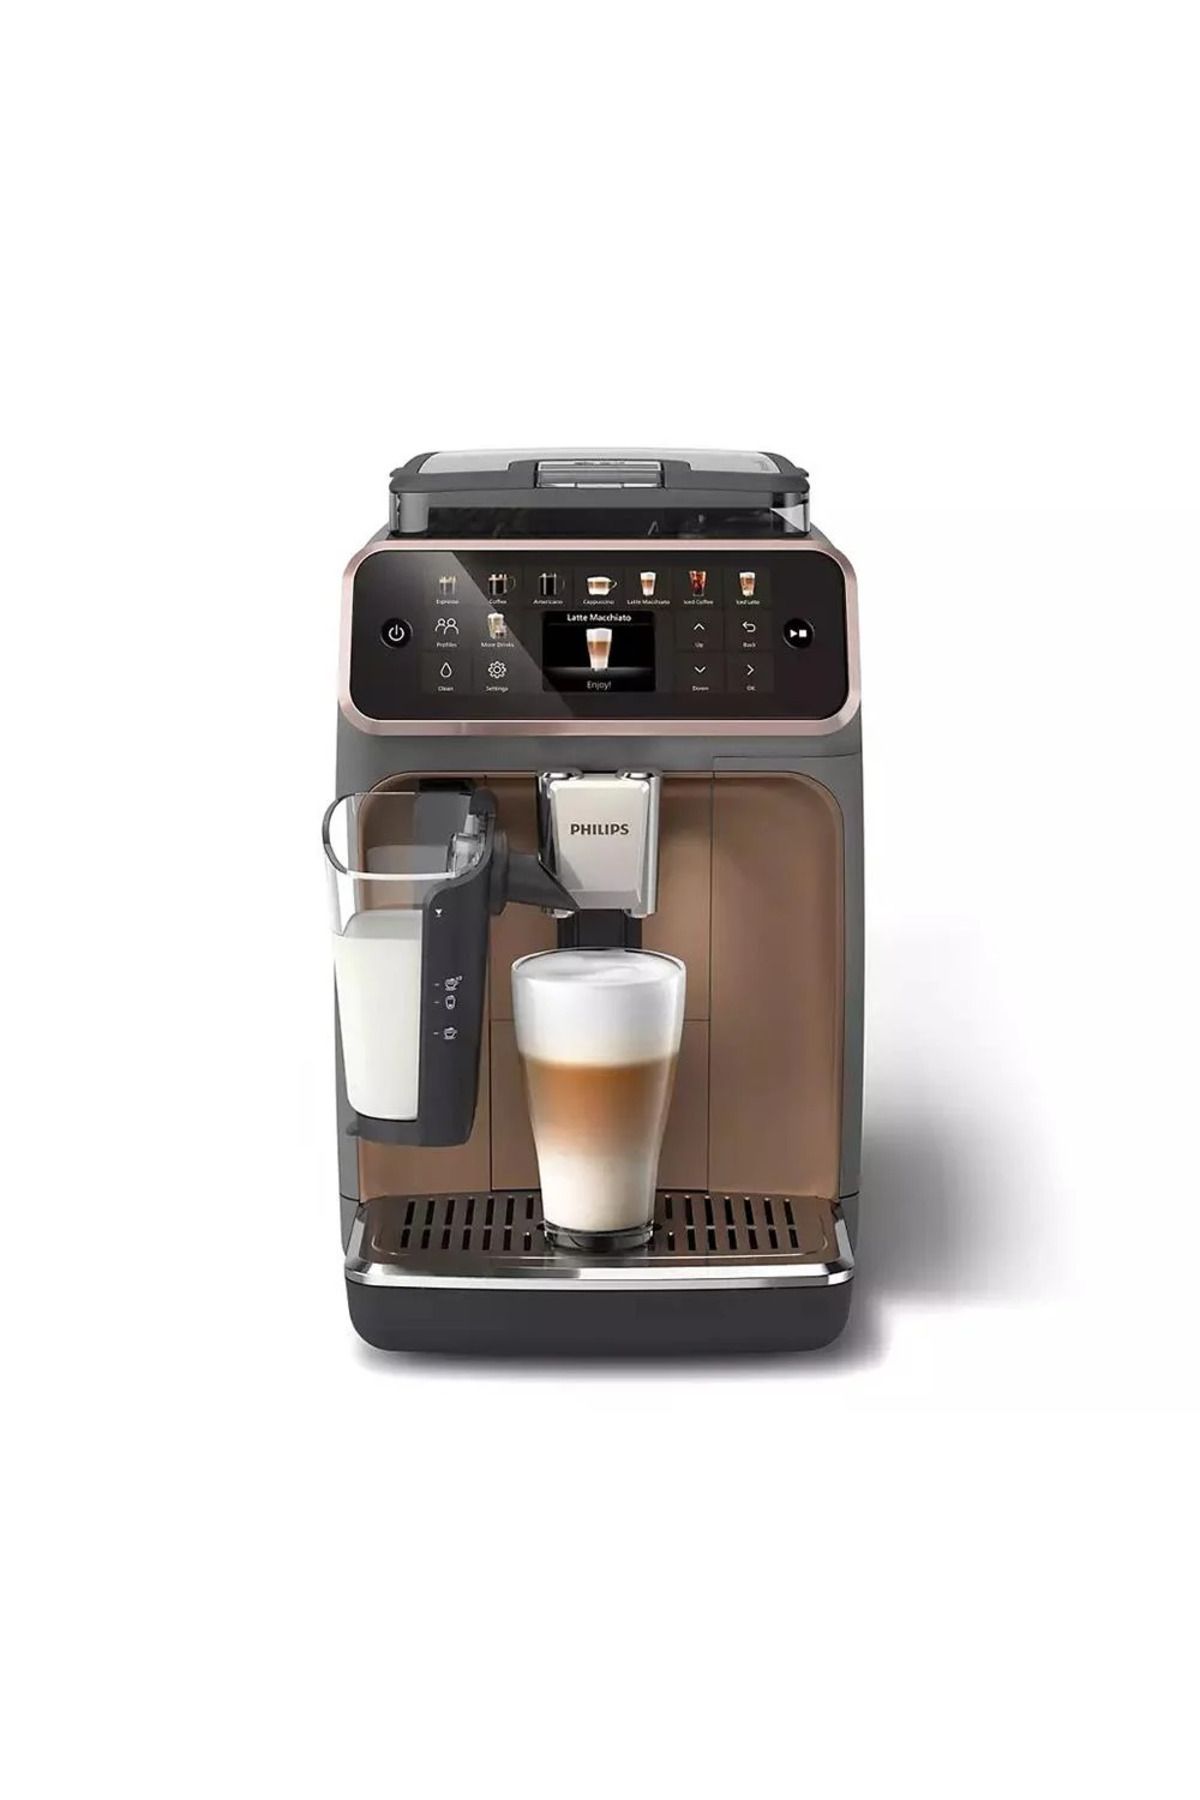 Philips EP5544 Seramik Öğütücülü 20 Çeşit İçeçek Hazırlama İmkanı Tam Otomatik Espresso Makinesi